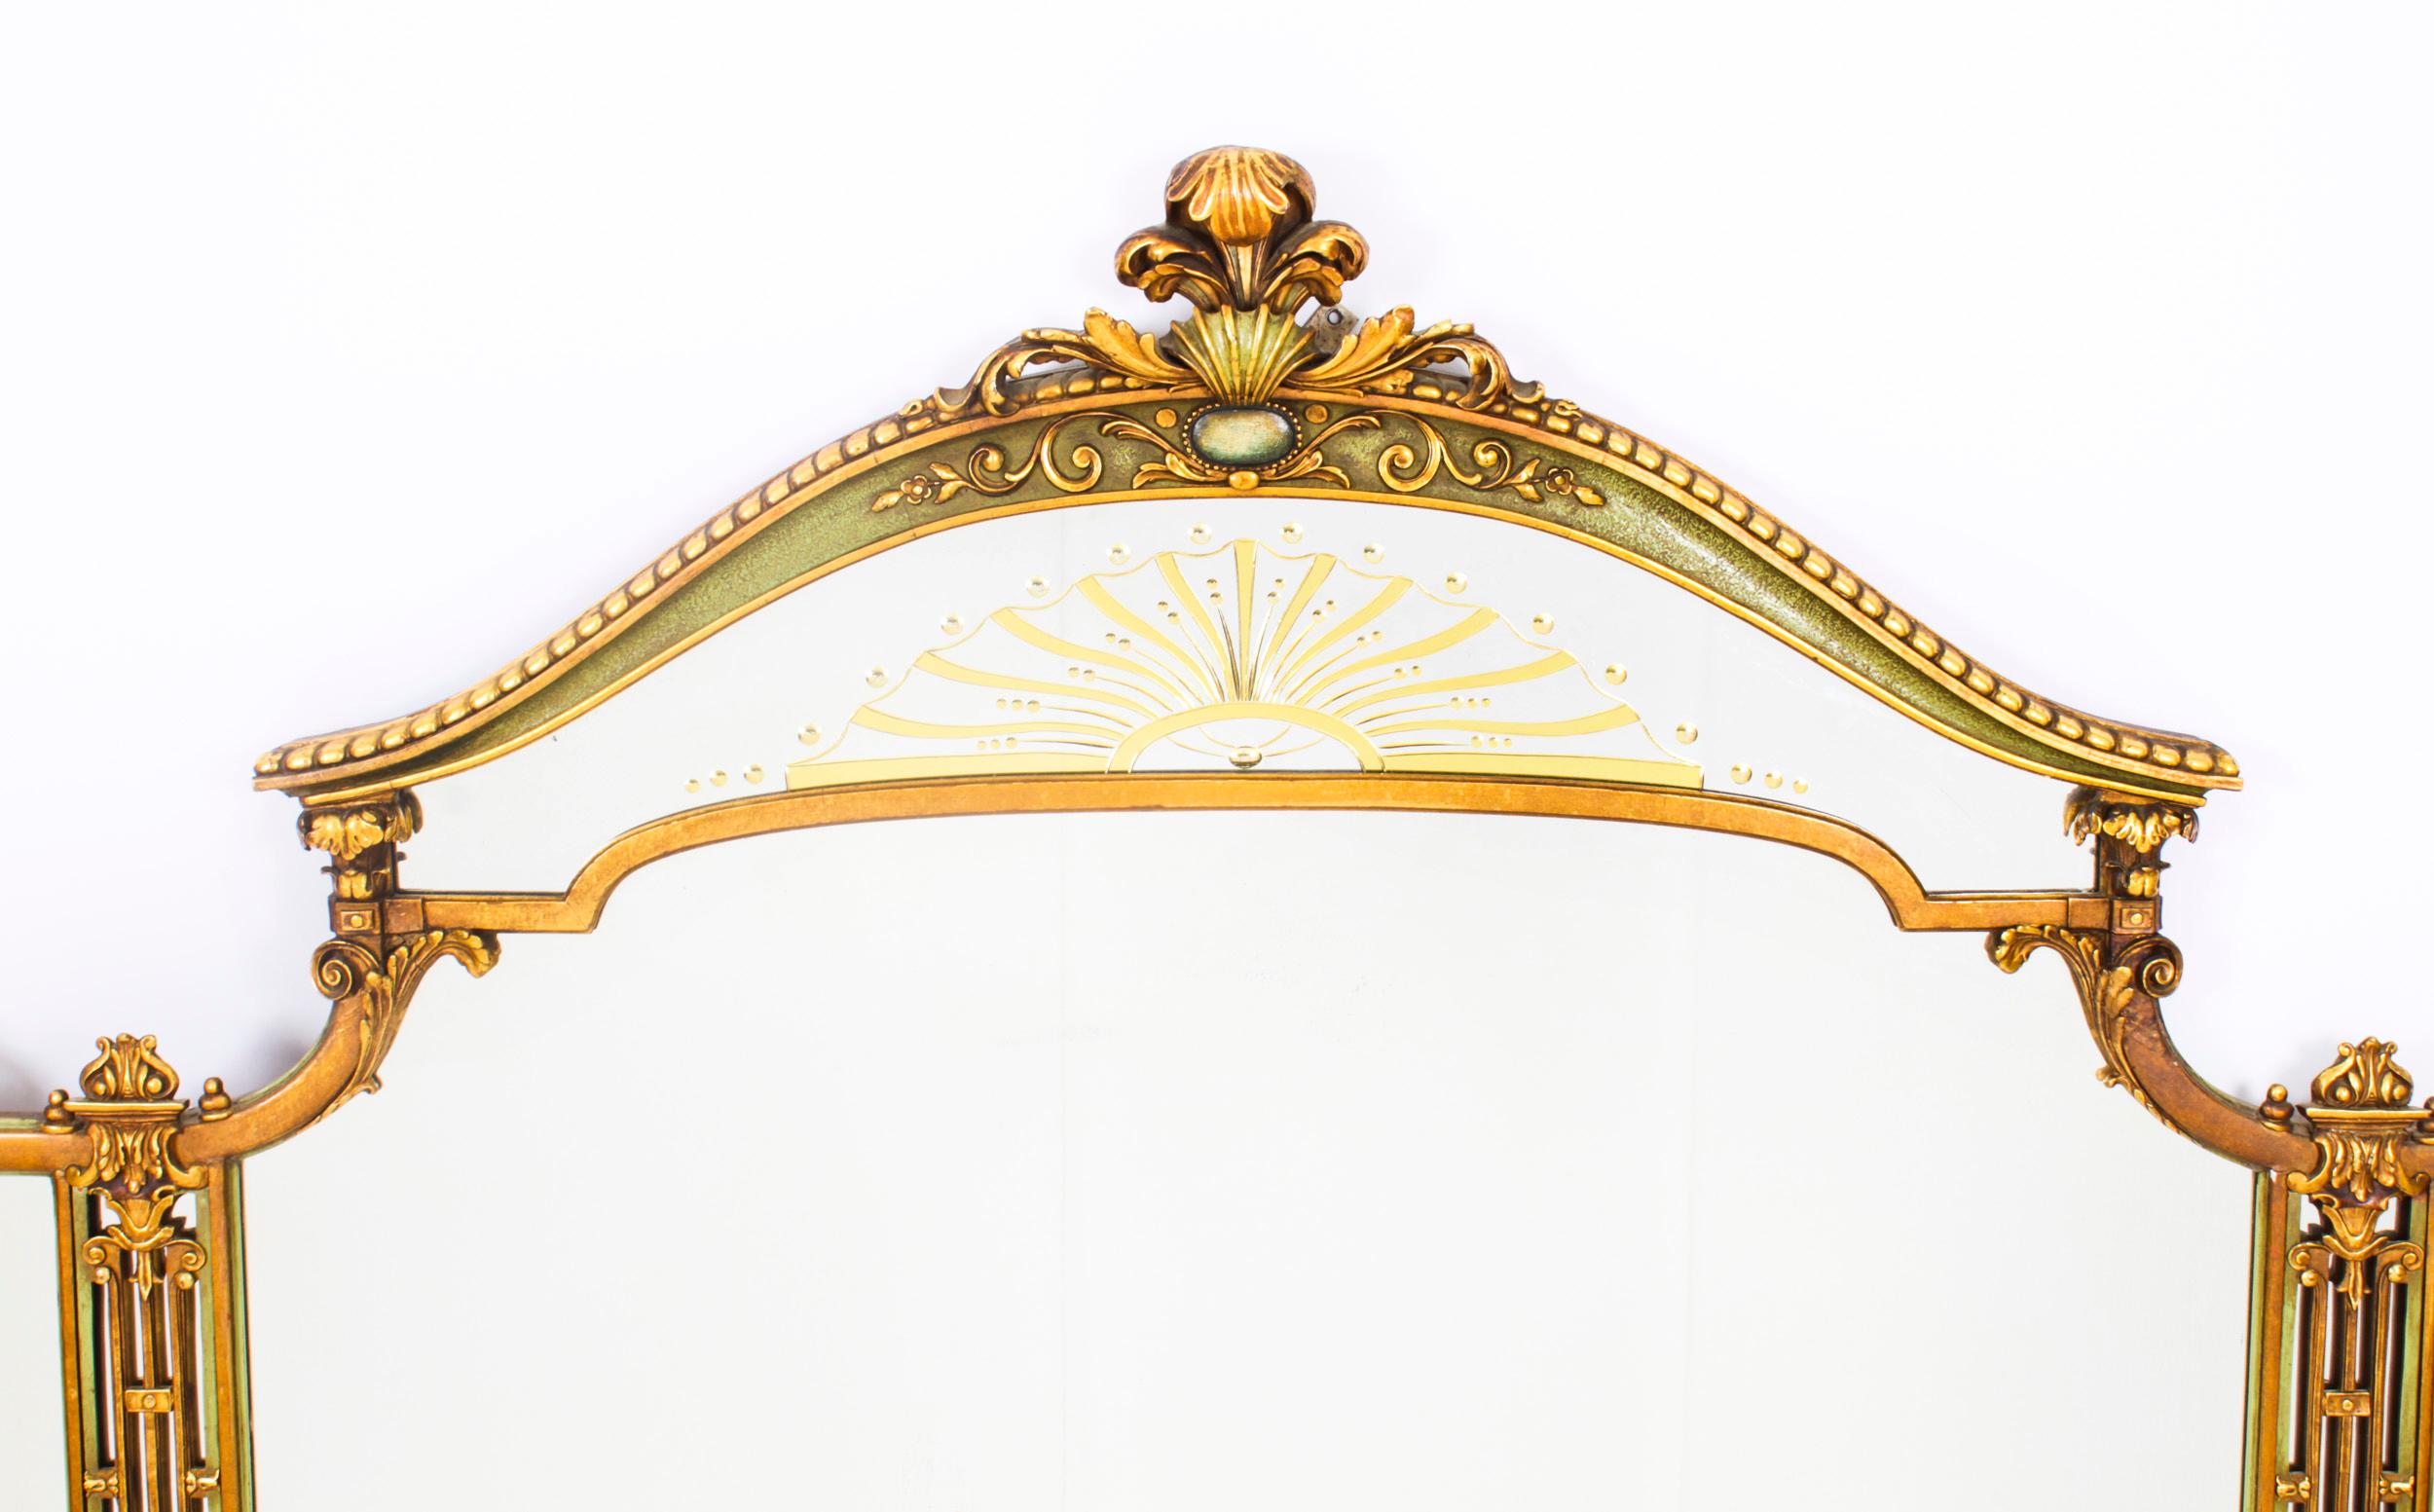 Dies ist ein schöner großer antiker englischer Art-Déco-Overmantle-Spiegel, datiert um 1920.

Der kunstvoll geformte Spiegel hat einen fein geschnitzten, vergoldeten Rahmen, der von Hand mit Blumen bemalt wurde. Er ist mit einem wunderschön